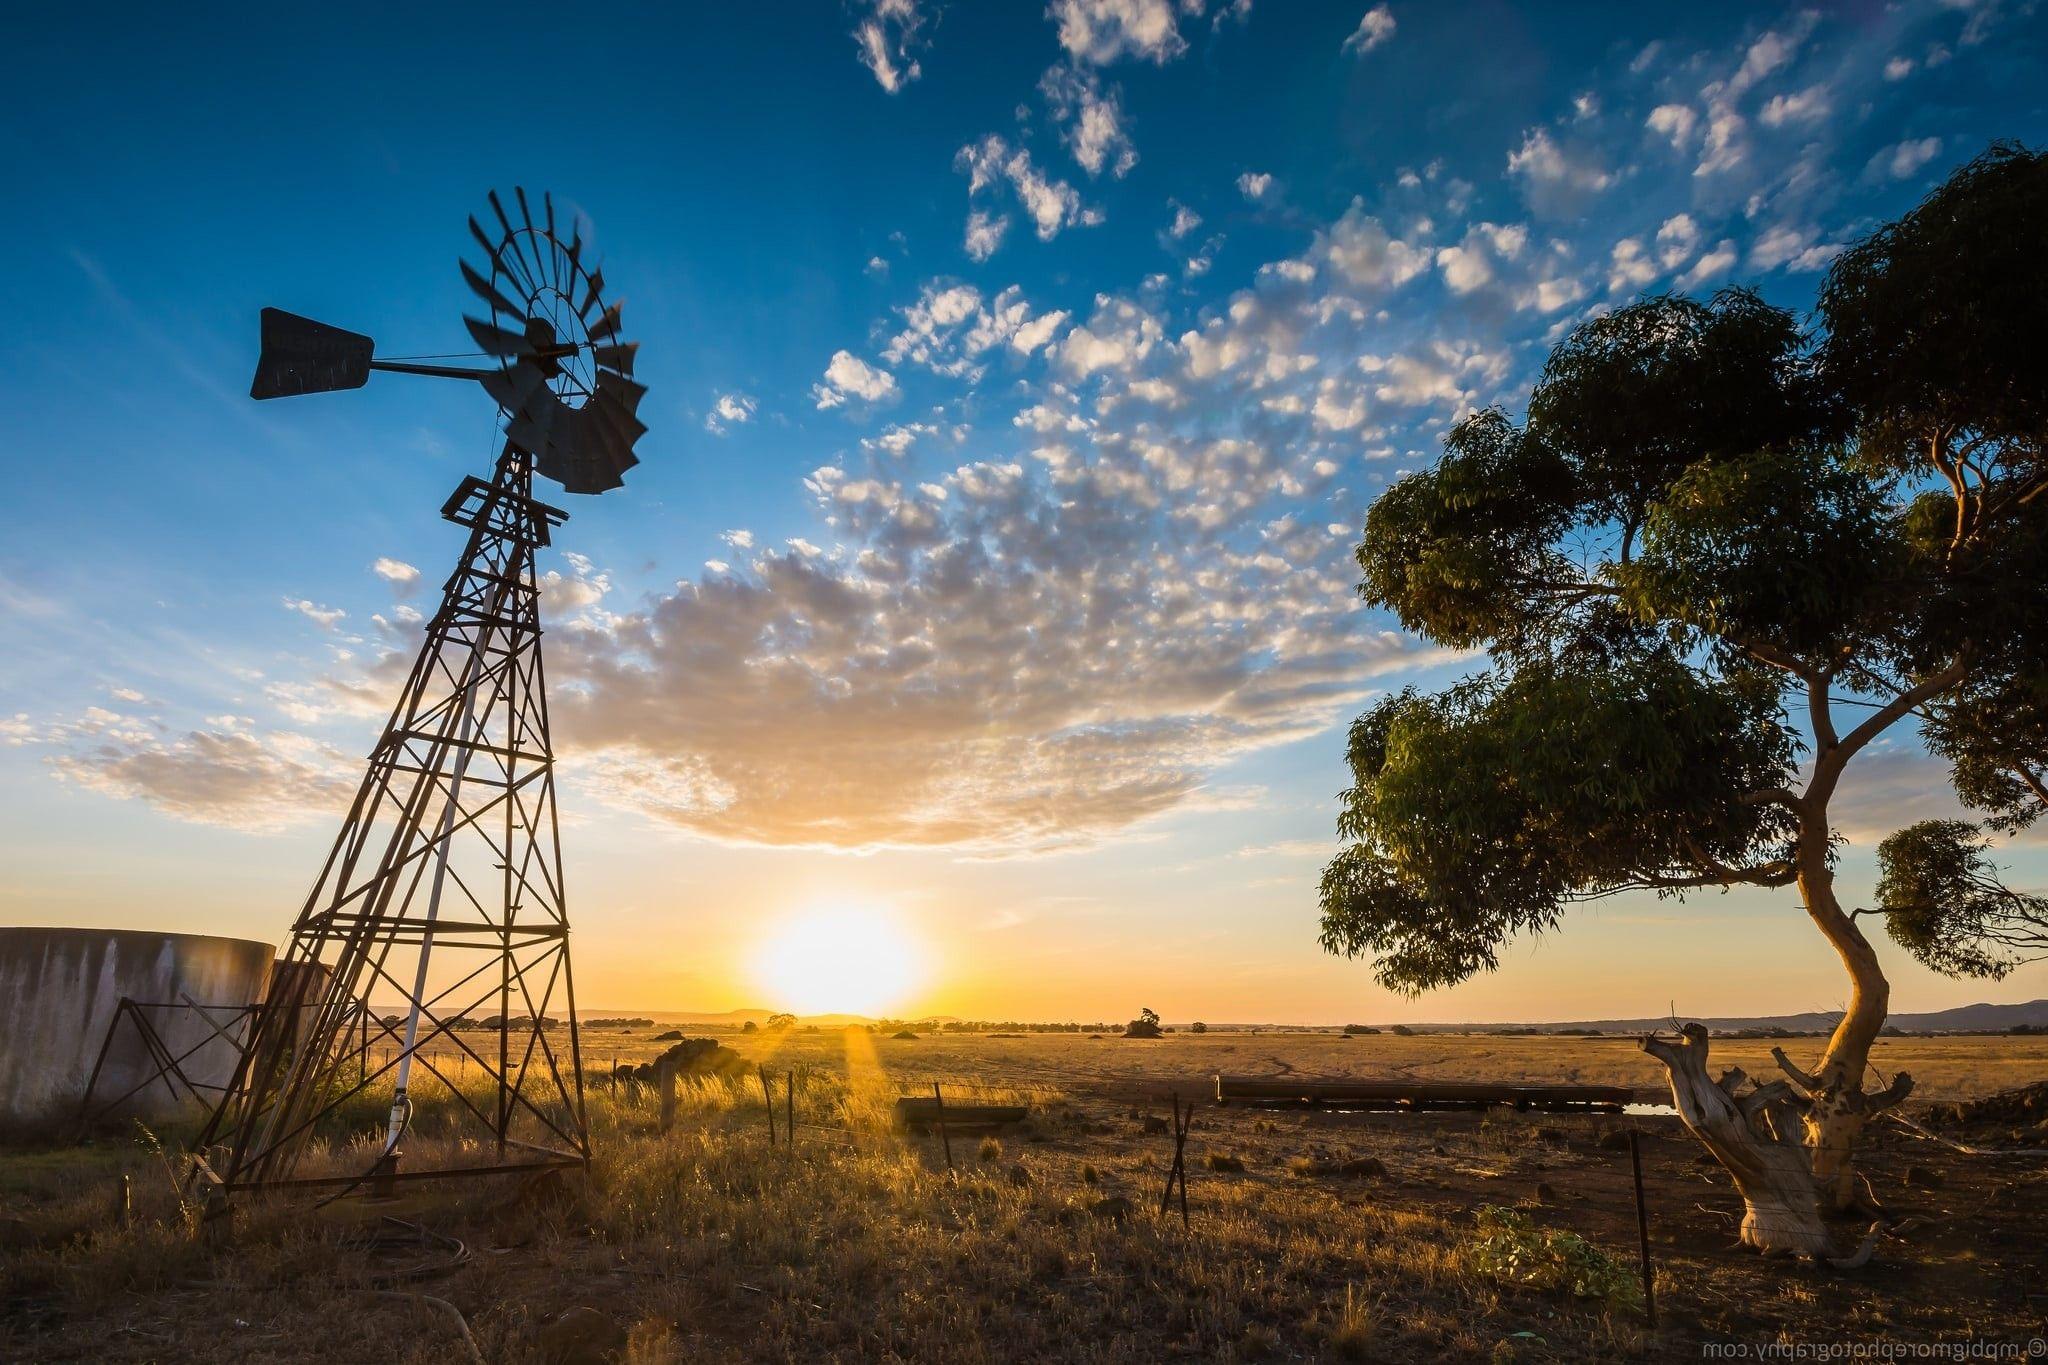 Res: 2048x Australia sunset farm rural landscape